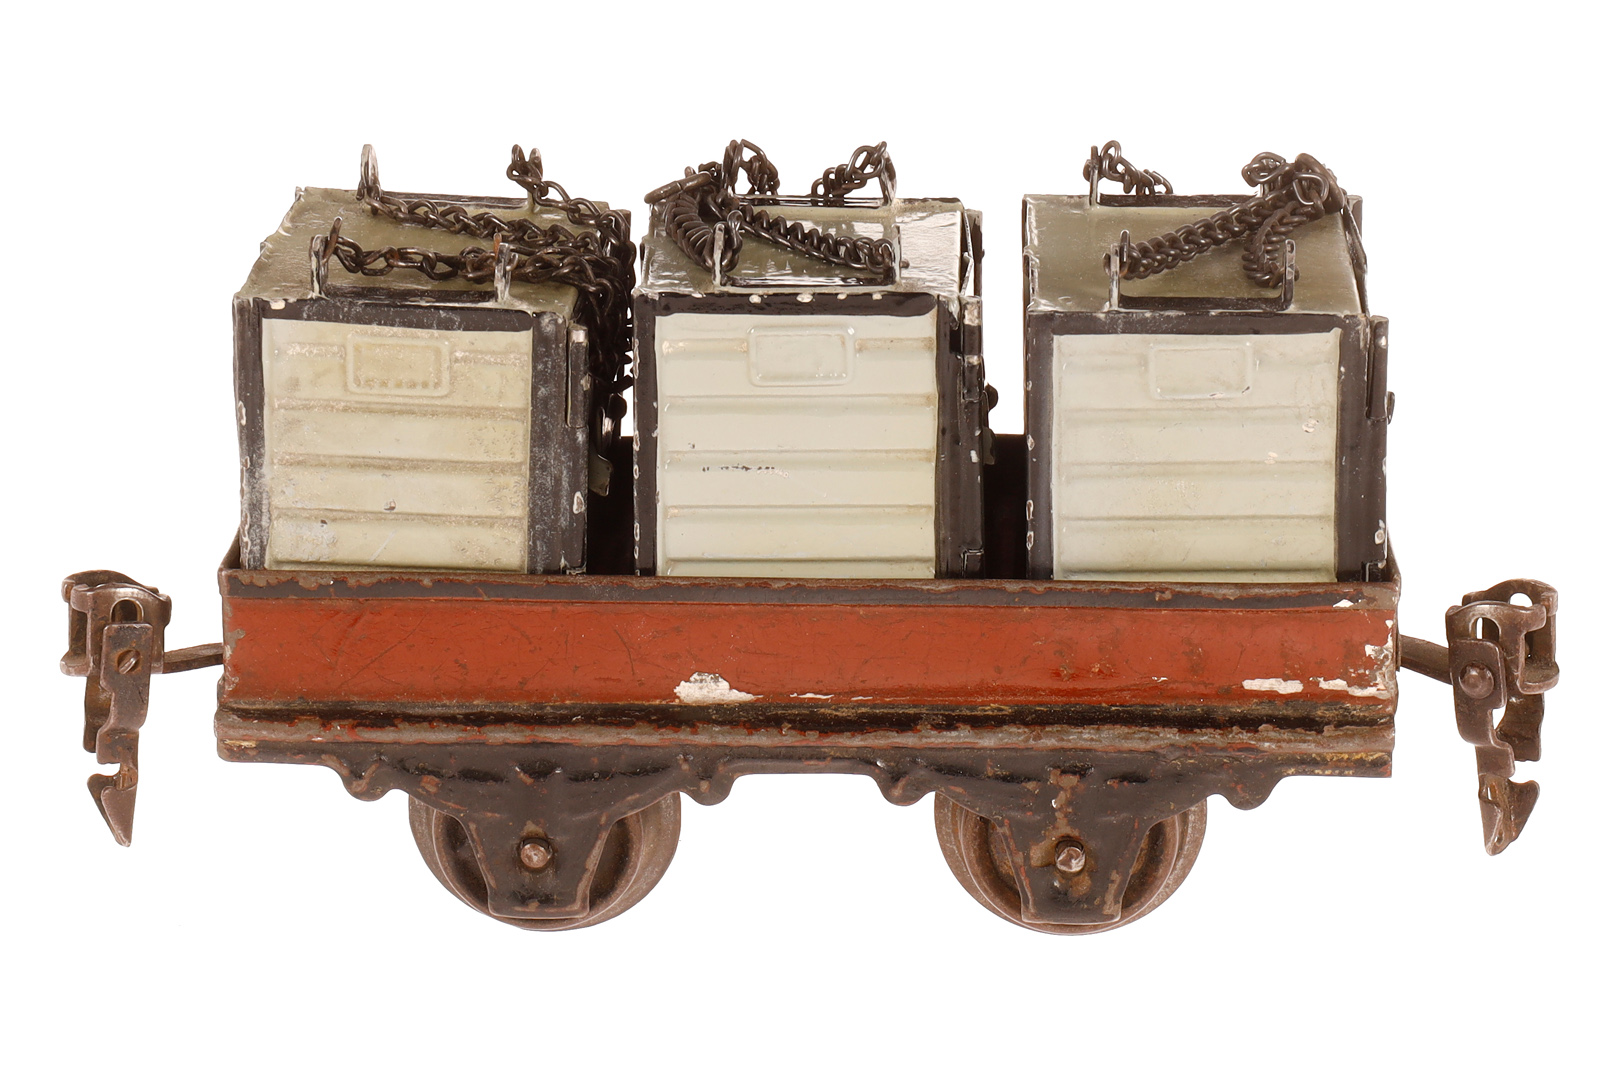 Märklin Seegepäckwagen 1898, Spur 0, uralt, handlackiert, mit 3 Containern, leichte Alterungs- und